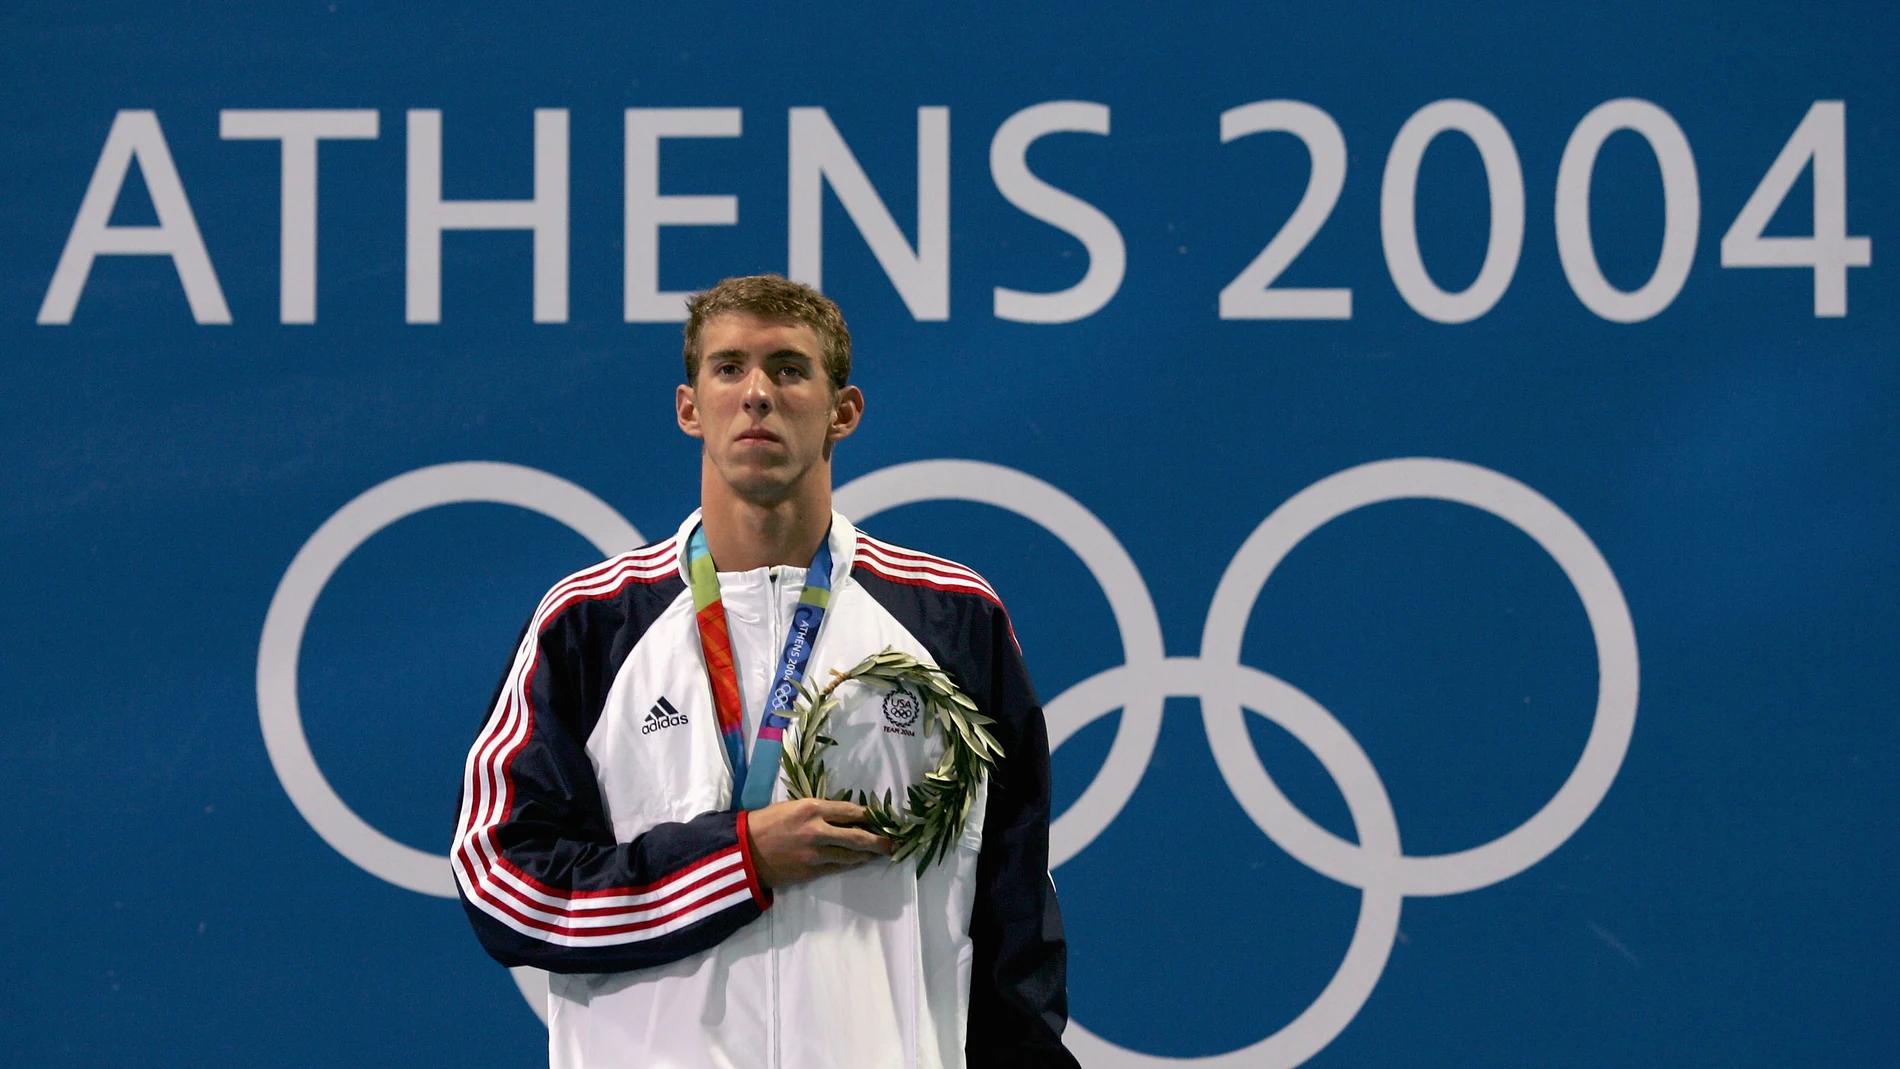 Michael Phelps, durante los Juegos de Atenas de 2004